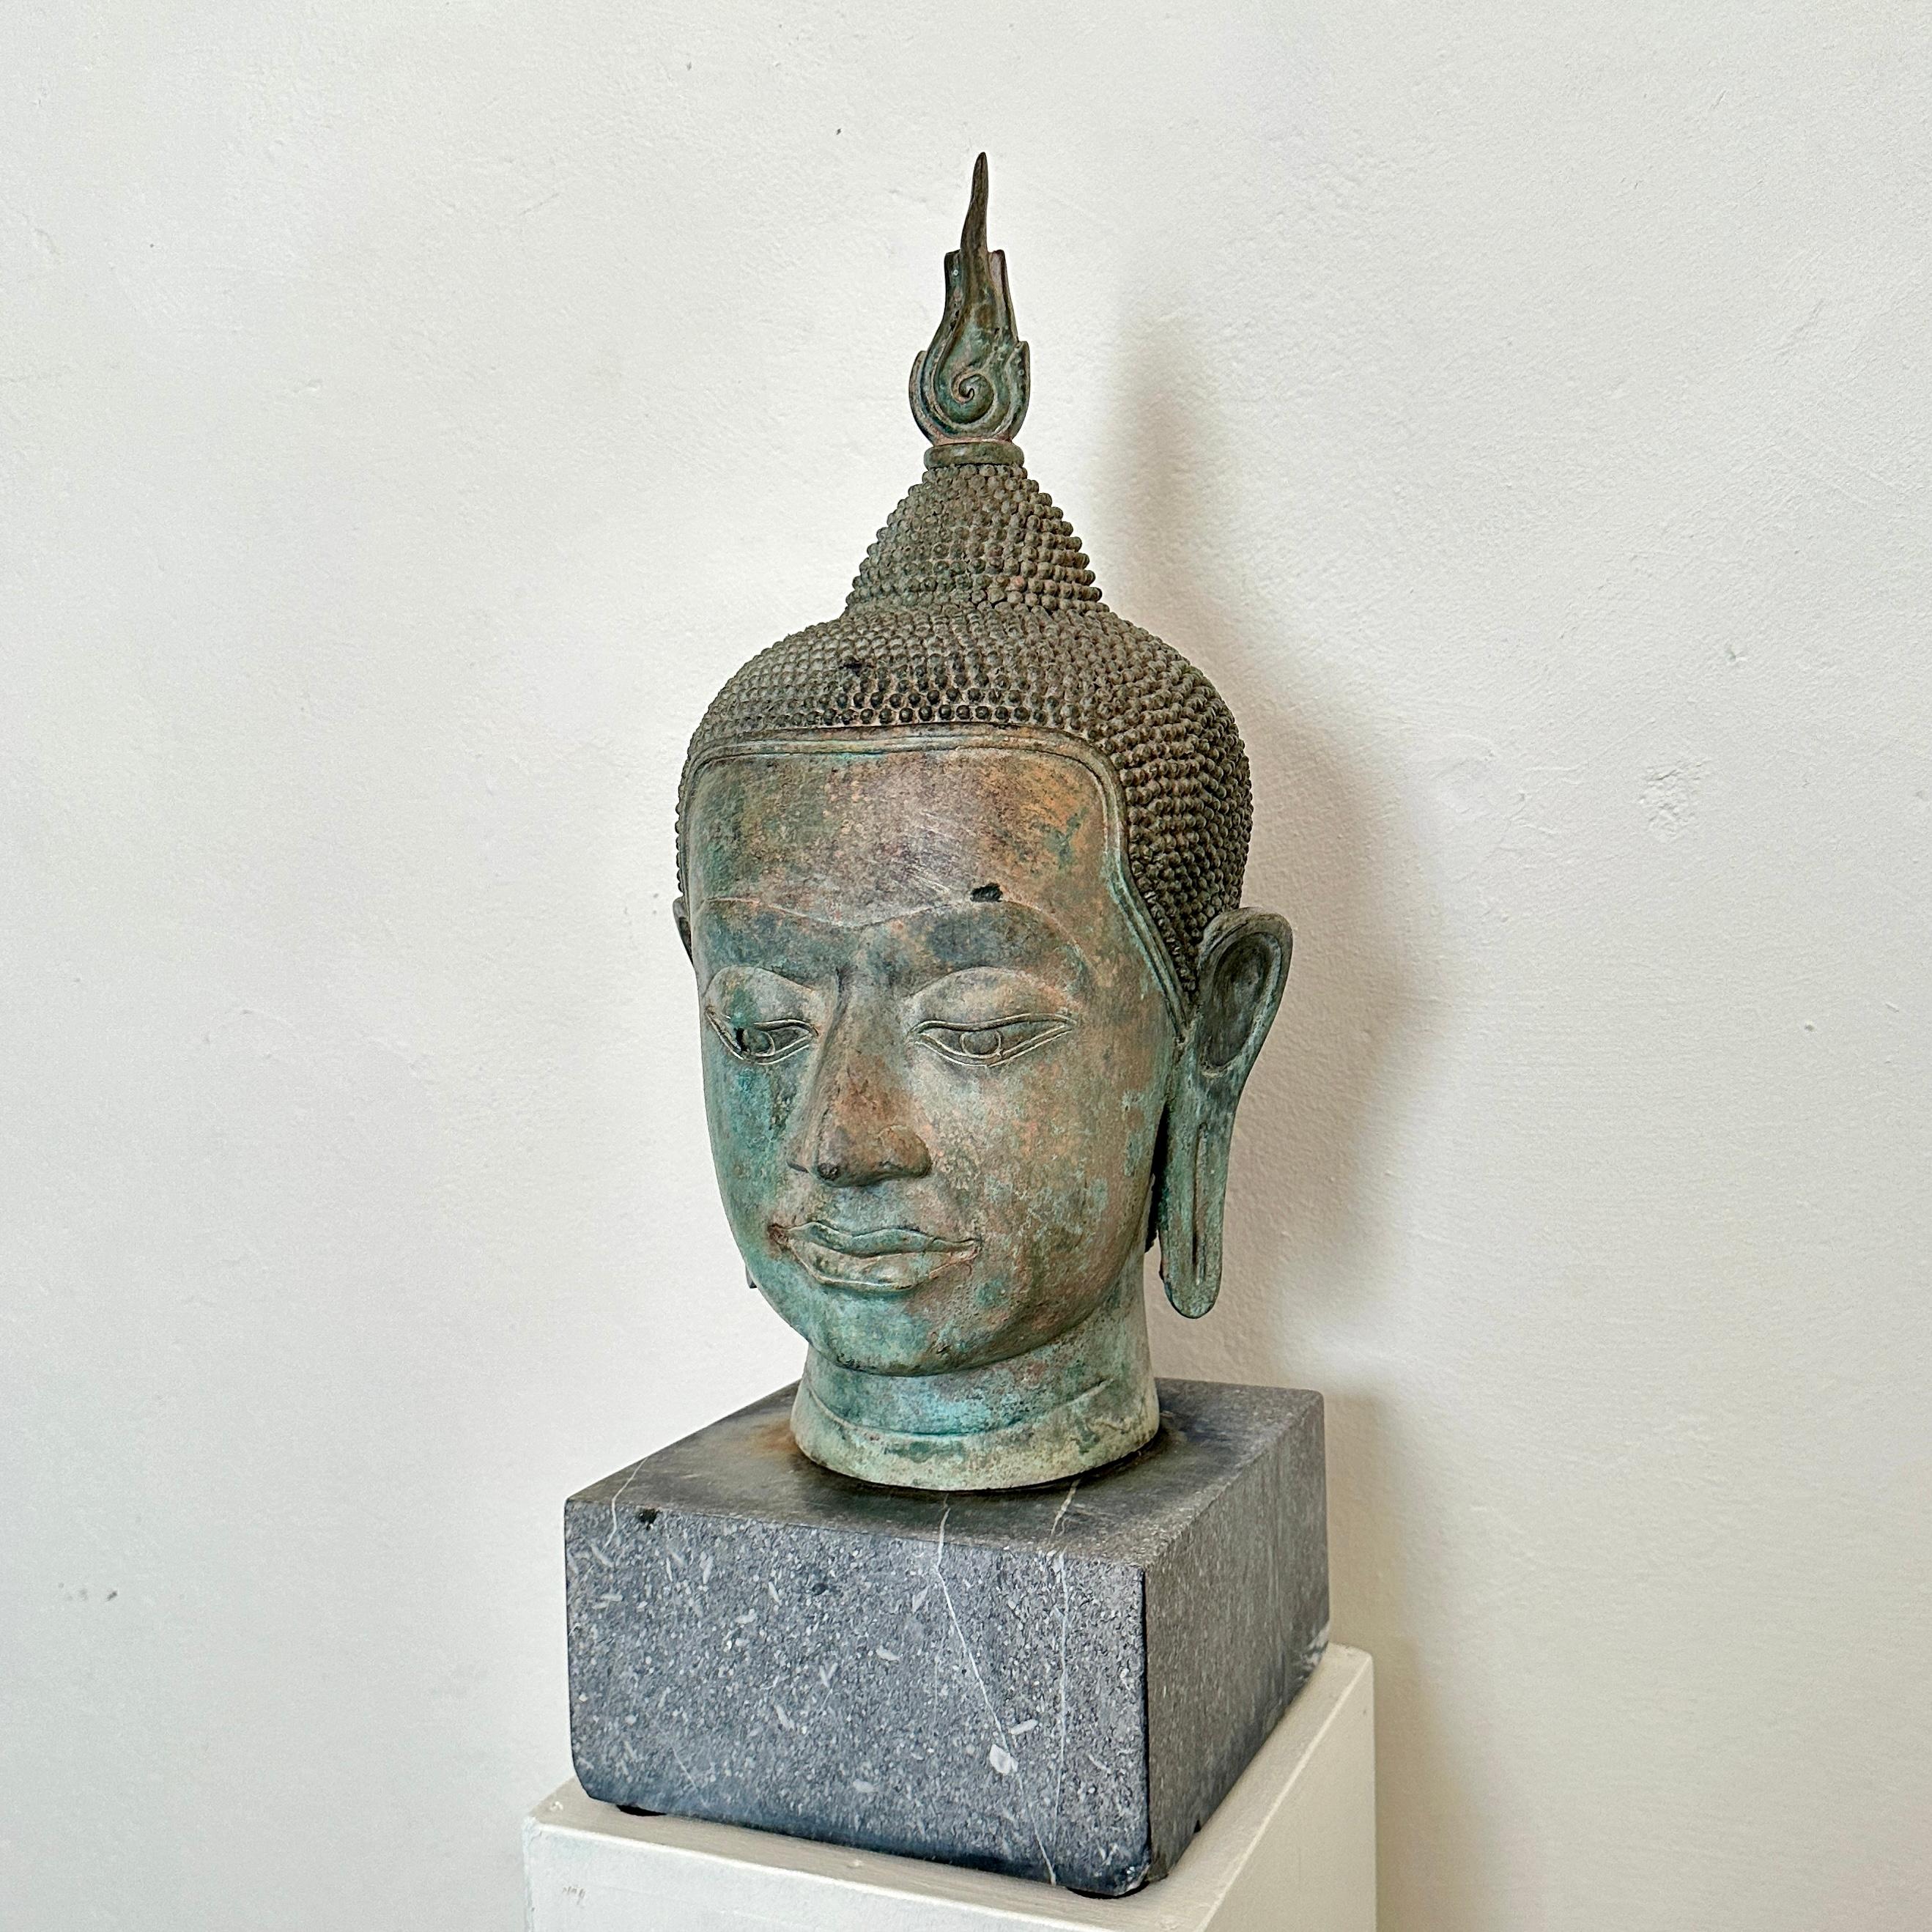 Dieser Sukhothai-Buddha-Kopf aus Bronzeguss der 1940er Jahre strahlt Ruhe und zeitlose Schönheit aus und ruht gelassen auf einem Sockel aus grauem Granit. Durch die Verschmelzung von künstlerischer Meisterschaft und spiritueller Bedeutung fängt die